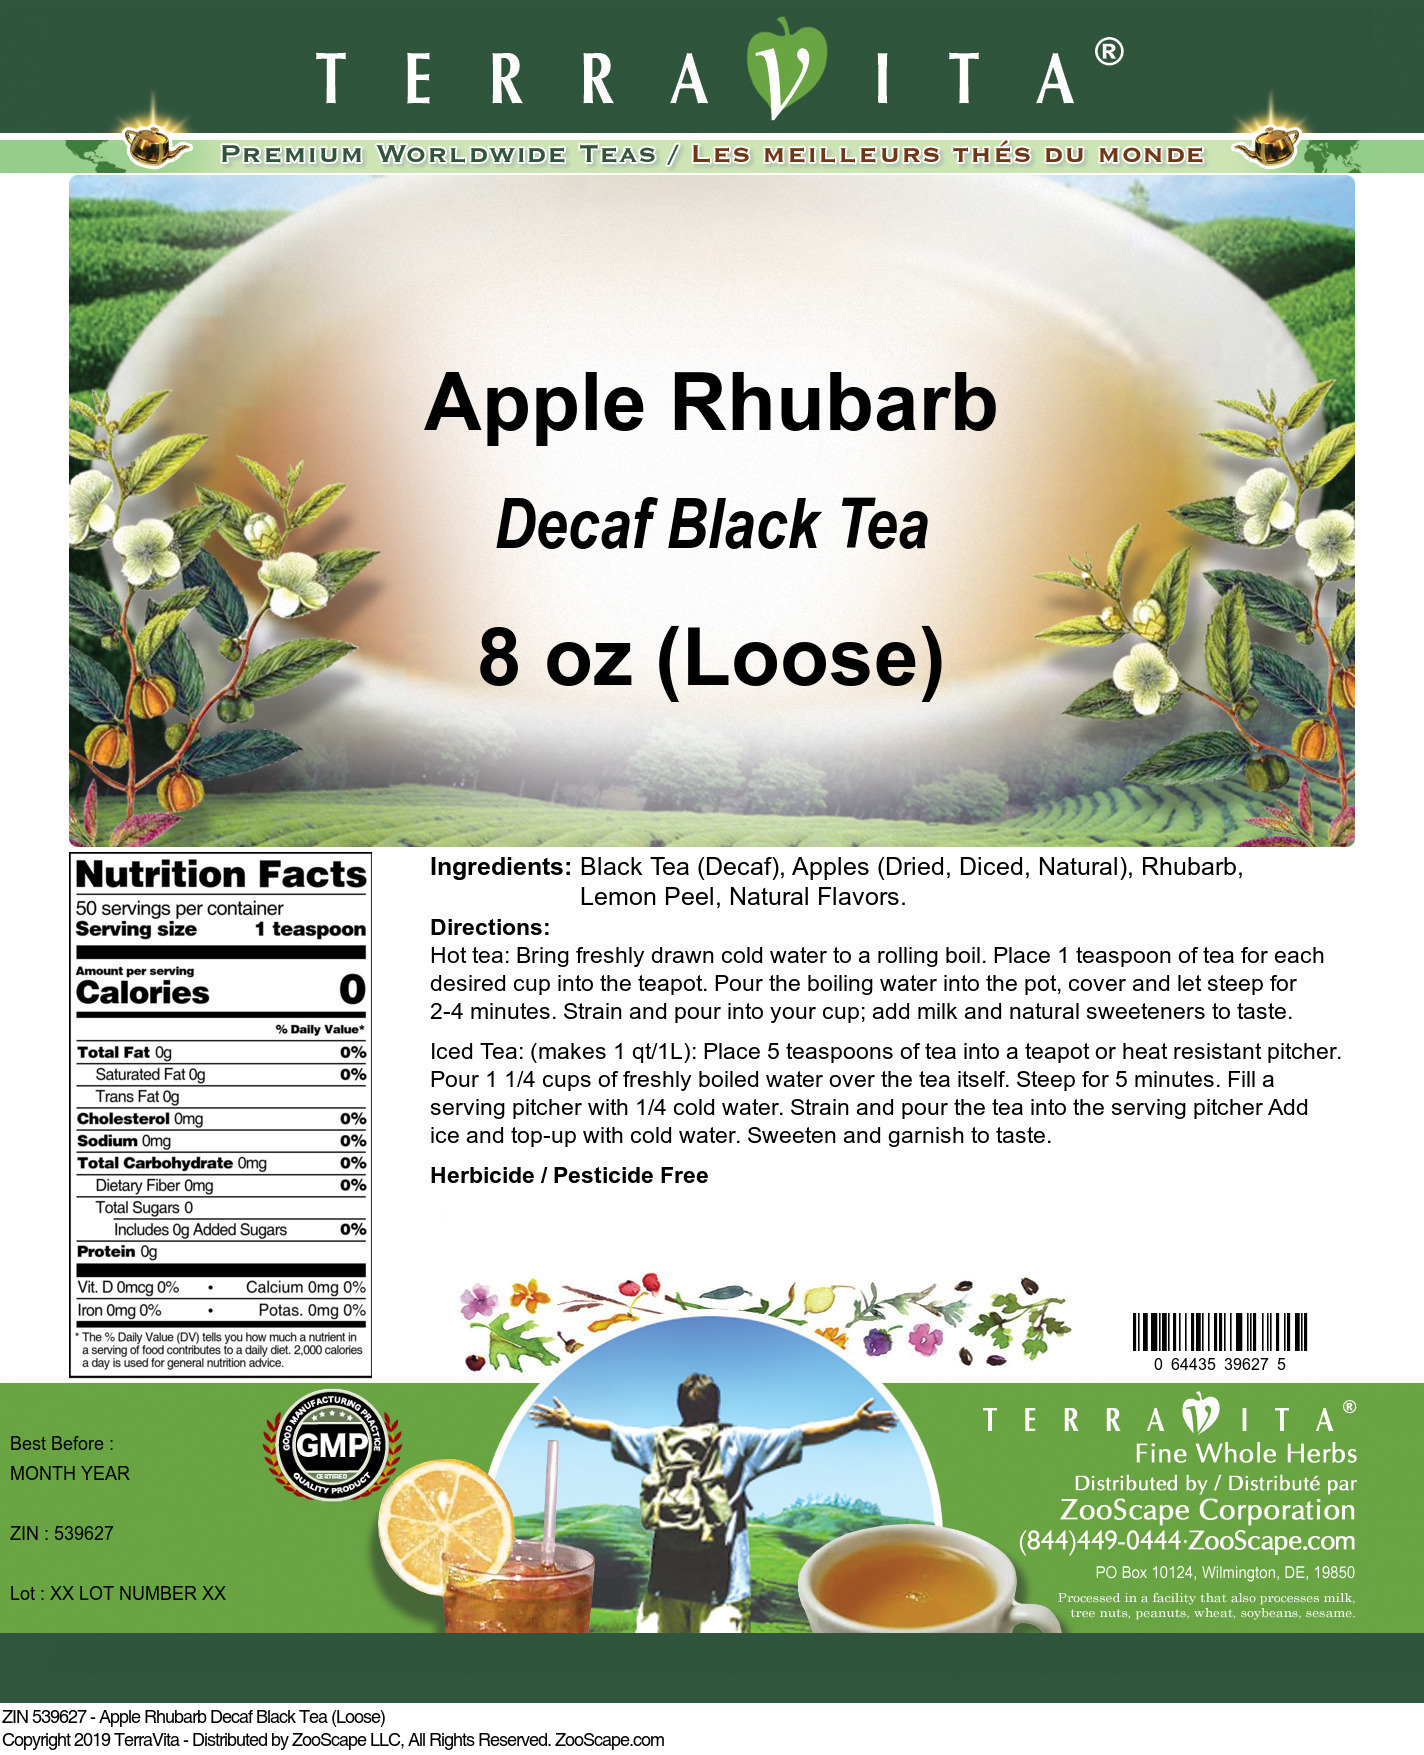 Apple Rhubarb Decaf Black Tea (Loose) - Label